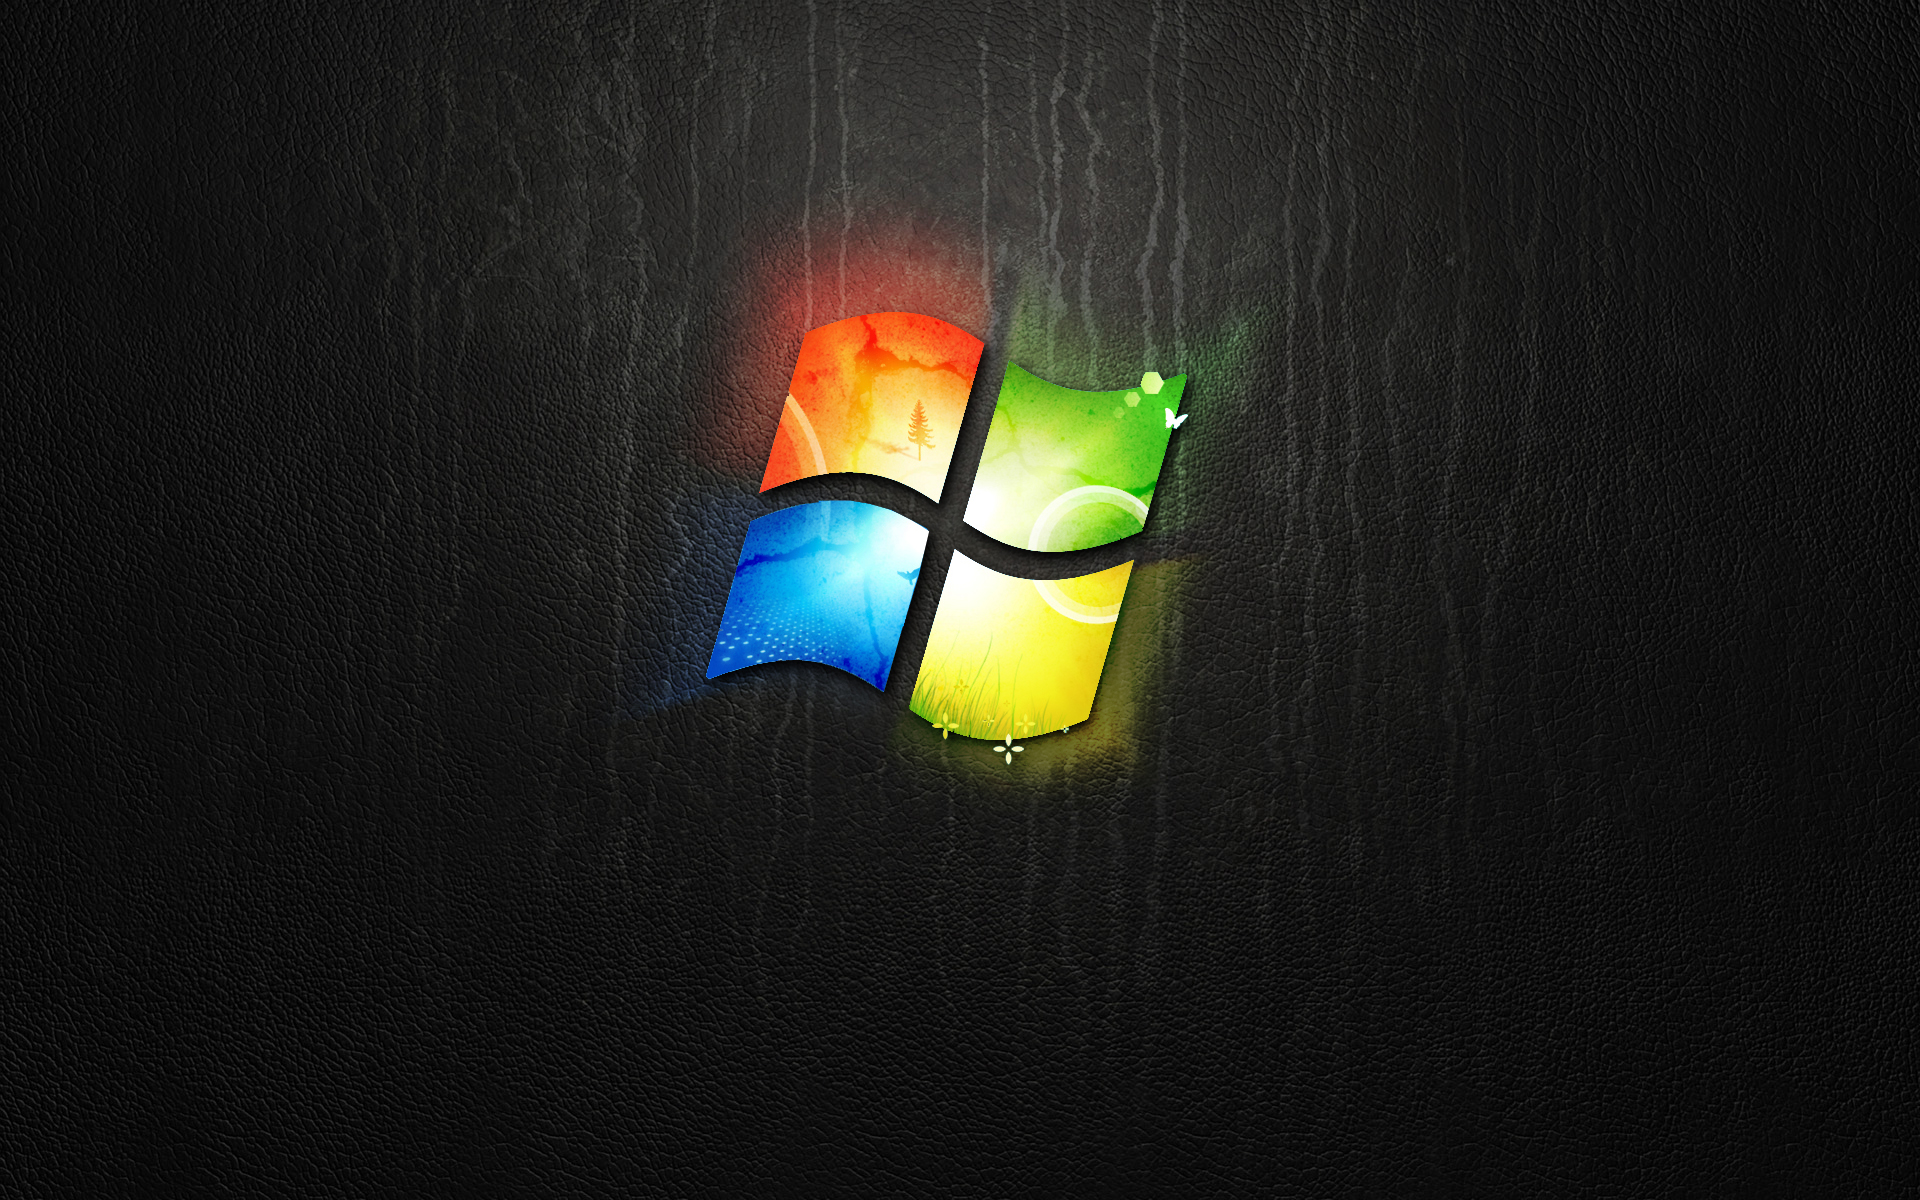 Windows 7 Black Wallpaper Hd 11 Cool Hd